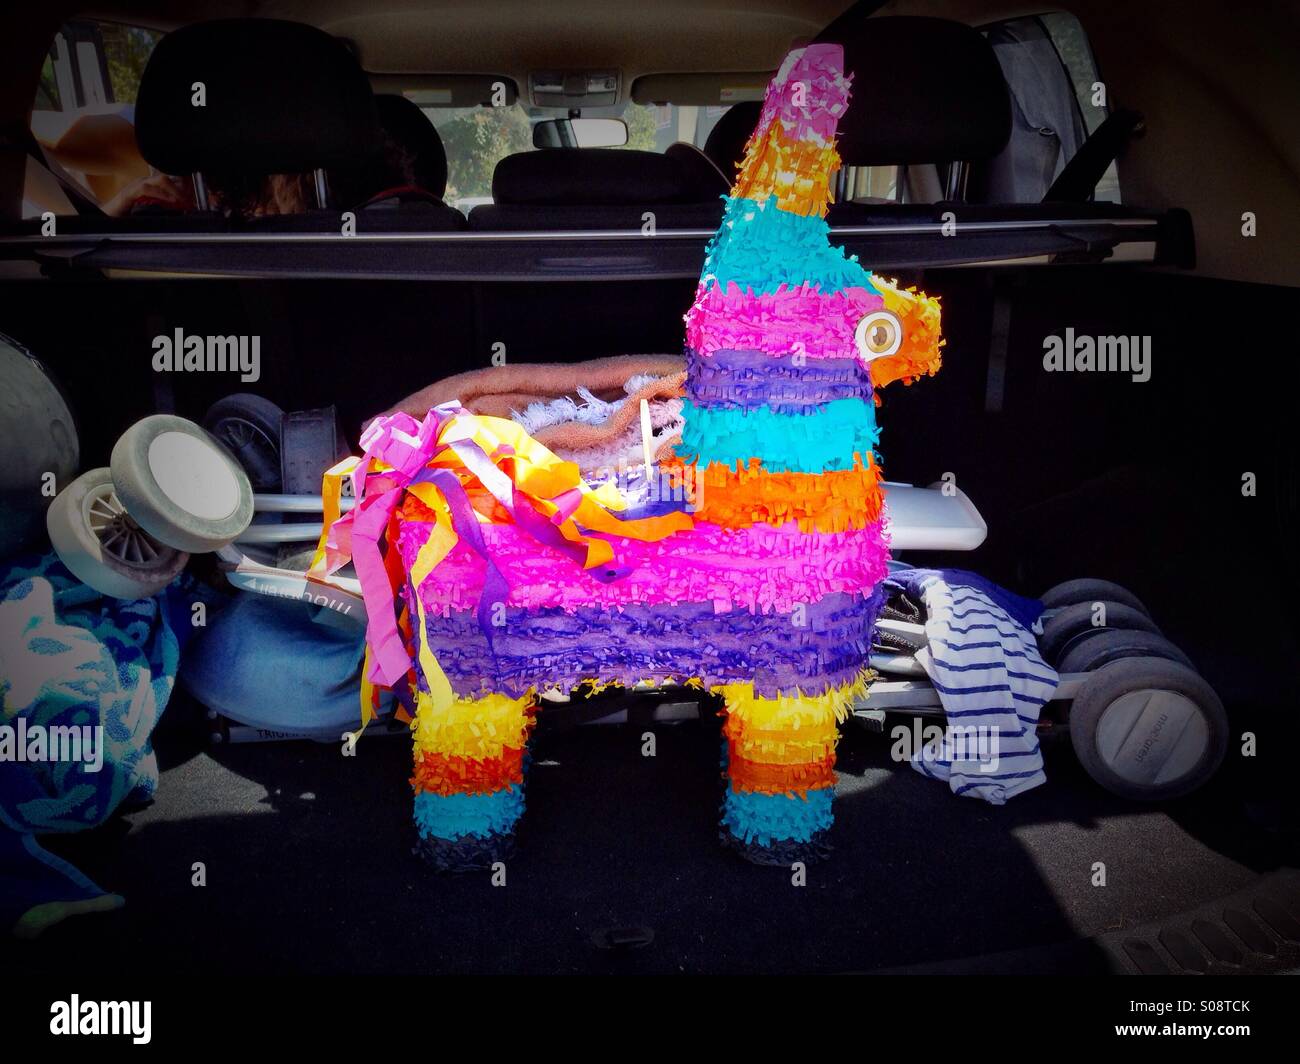 Piñata im Kofferraum eines Autos Stockfoto